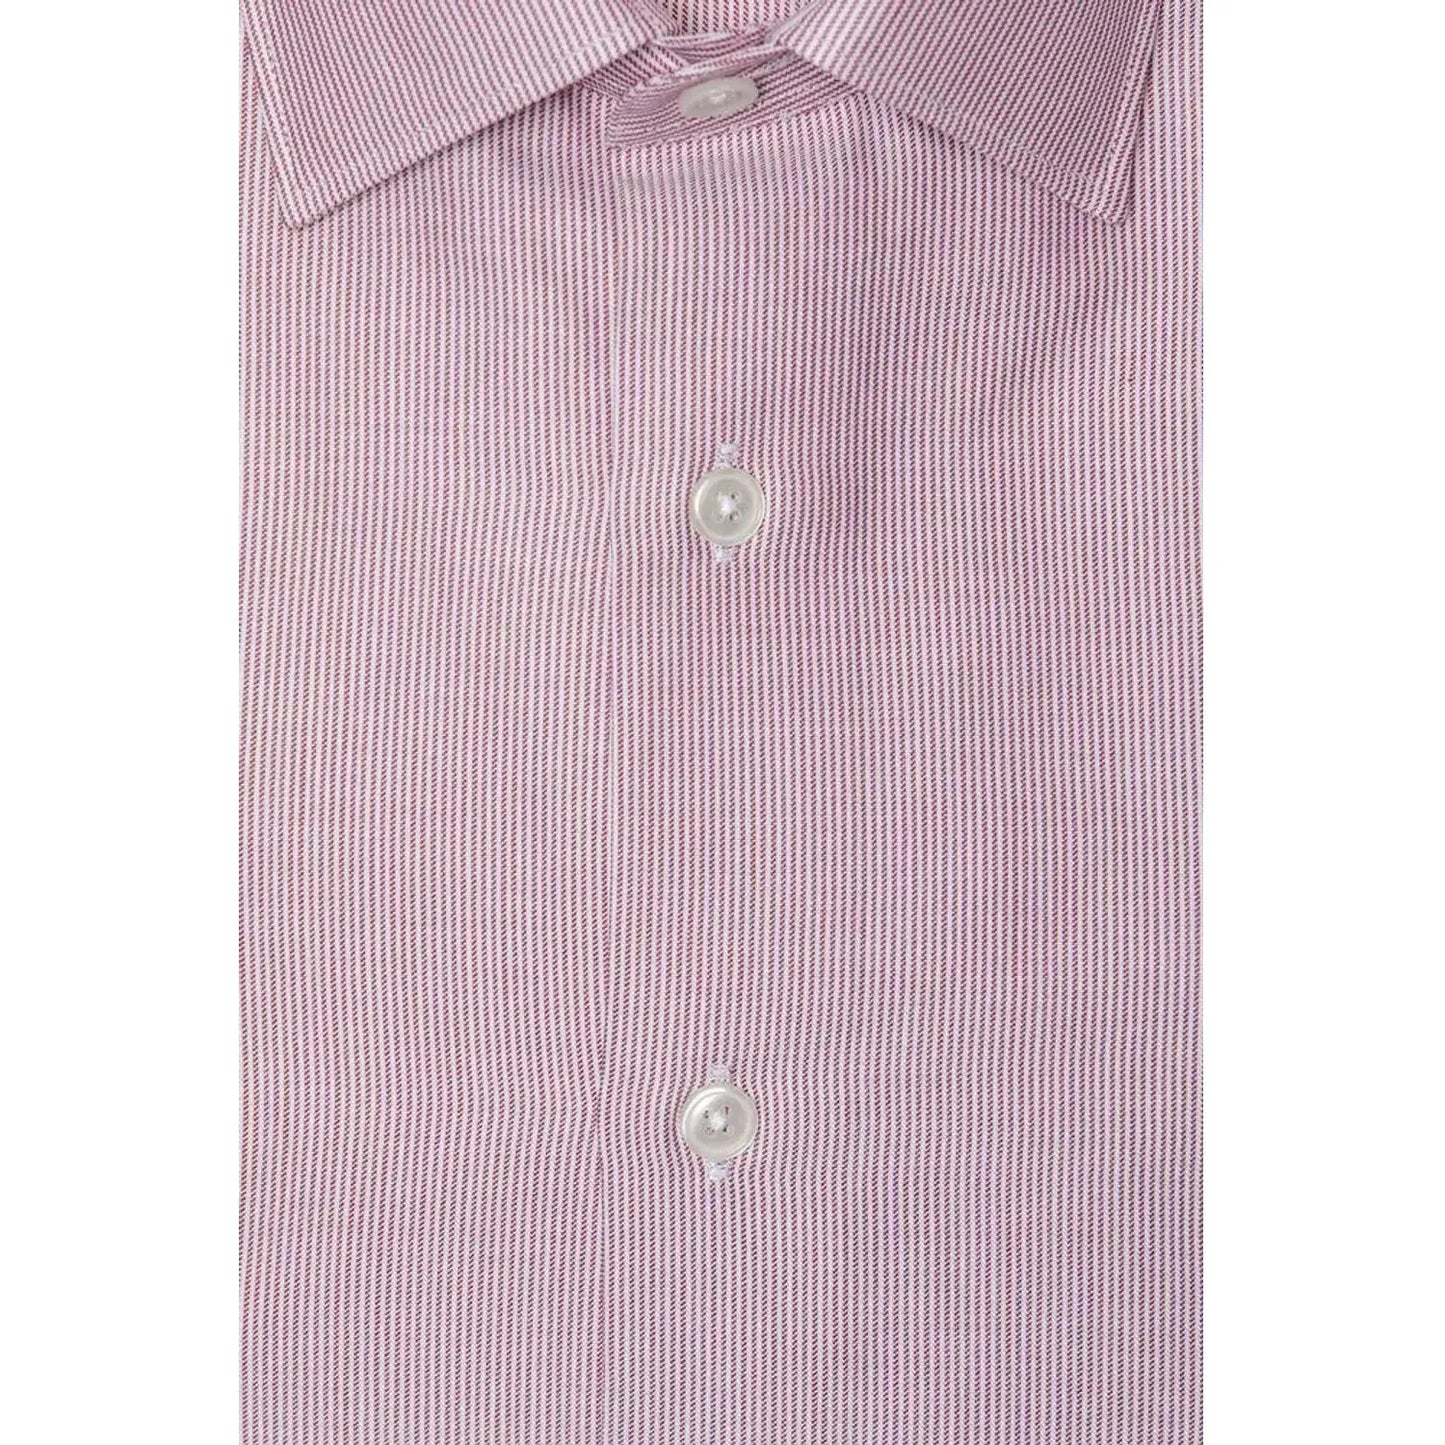 Robert Friedman Chic Pink Cotton Slim Collar Shirt pink-cotton-shirt-4